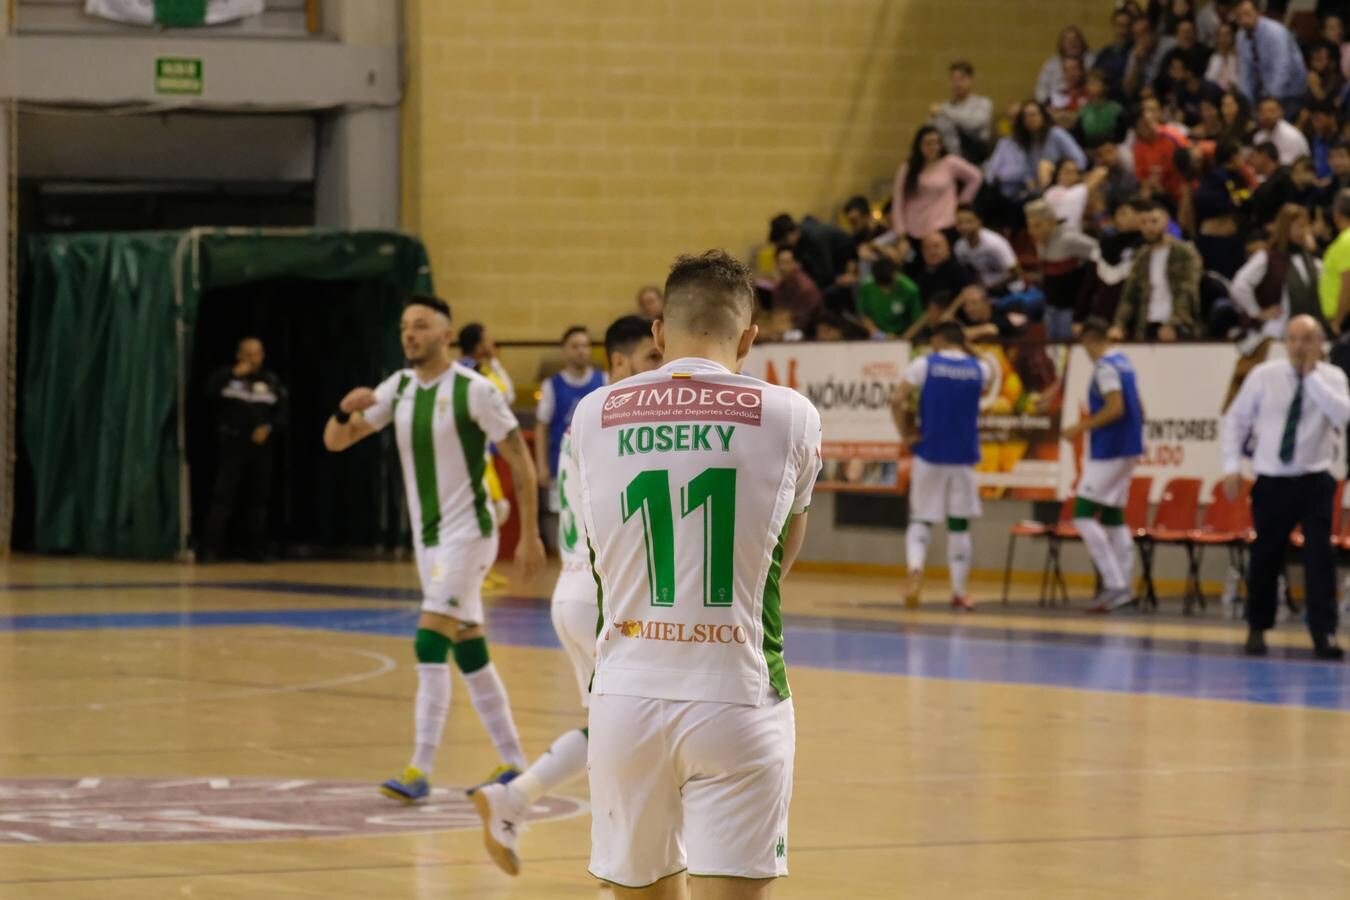 El Córdoba Futsal-Betis, en imágenes